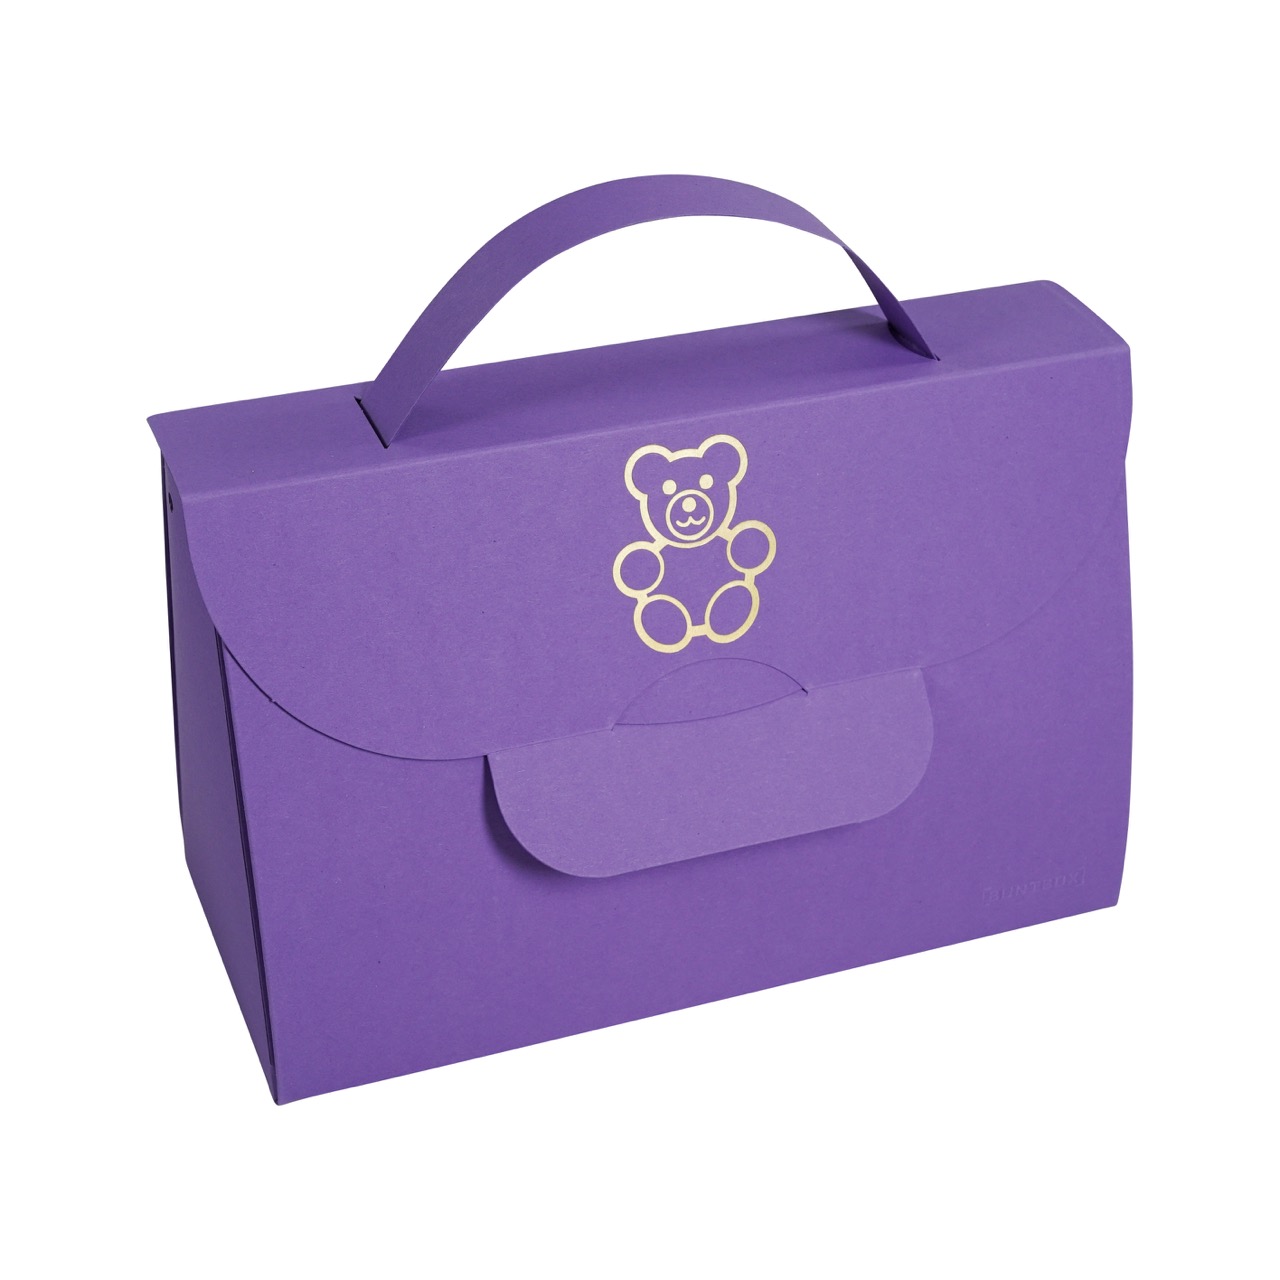 Buntbox Handbag XL Goldener Teddy in Lavendel